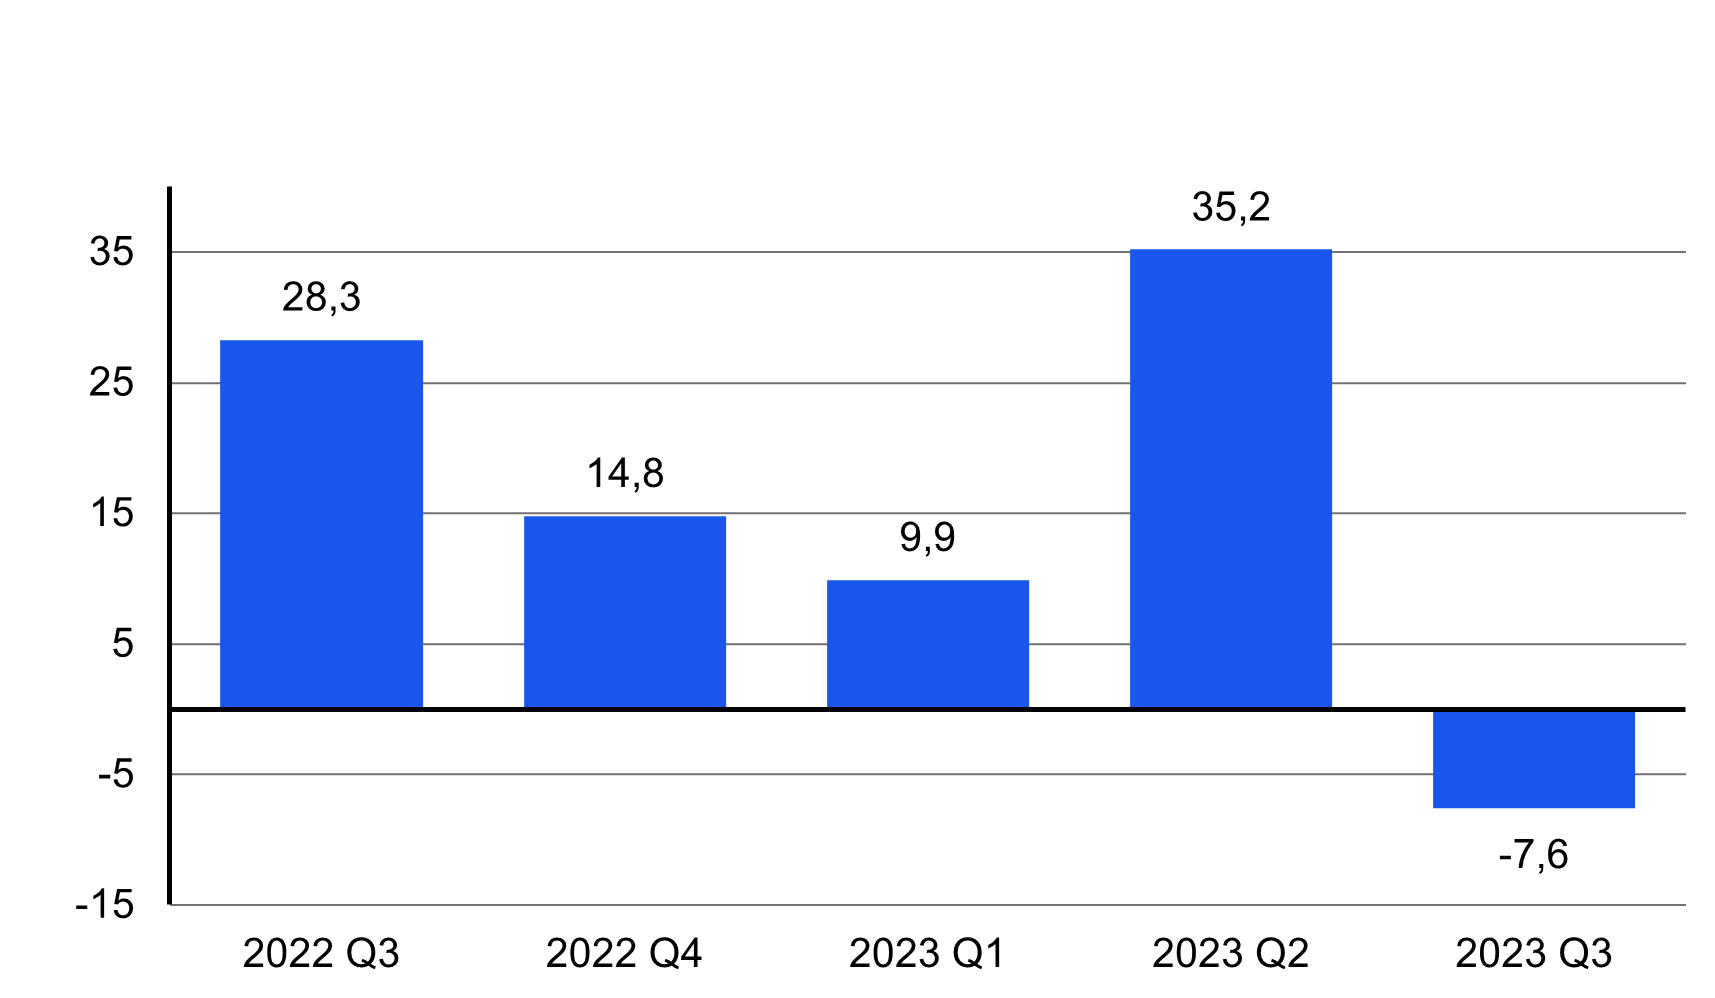 Yritysten investointien vuosimuutos vuosineljänneksittäin 2022 Q3 – 2023 Q3: yritysten tekemät investoinnit laskivat vuoden 2023 kolmannella neljänneksellä 7,6 prosenttia vuodentakaiseen verrattuna.